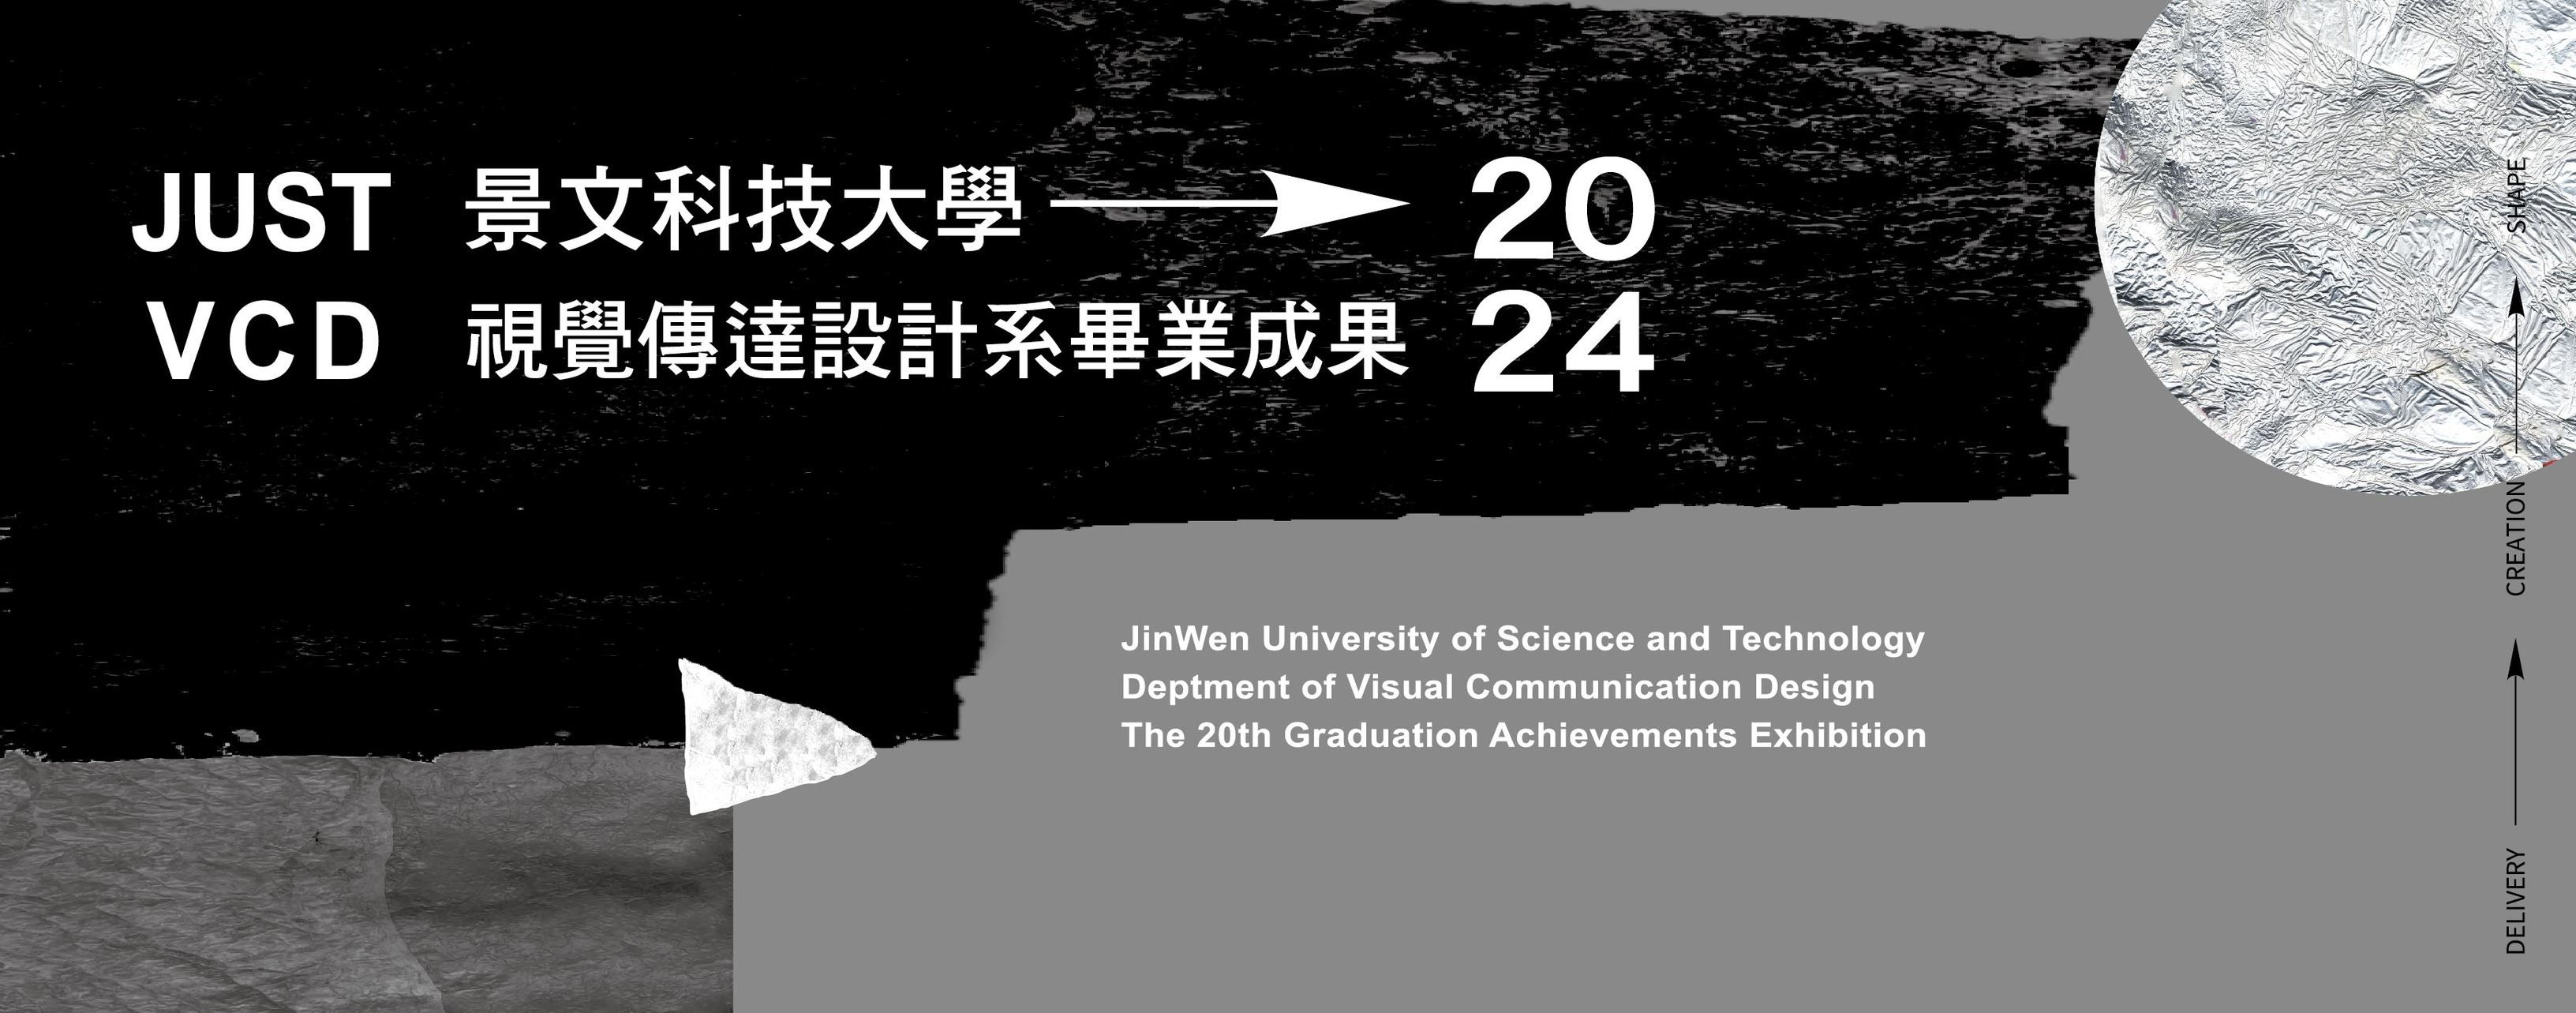 2024-JUST VCD-景文科大視覺傳達設計系畢業成果展